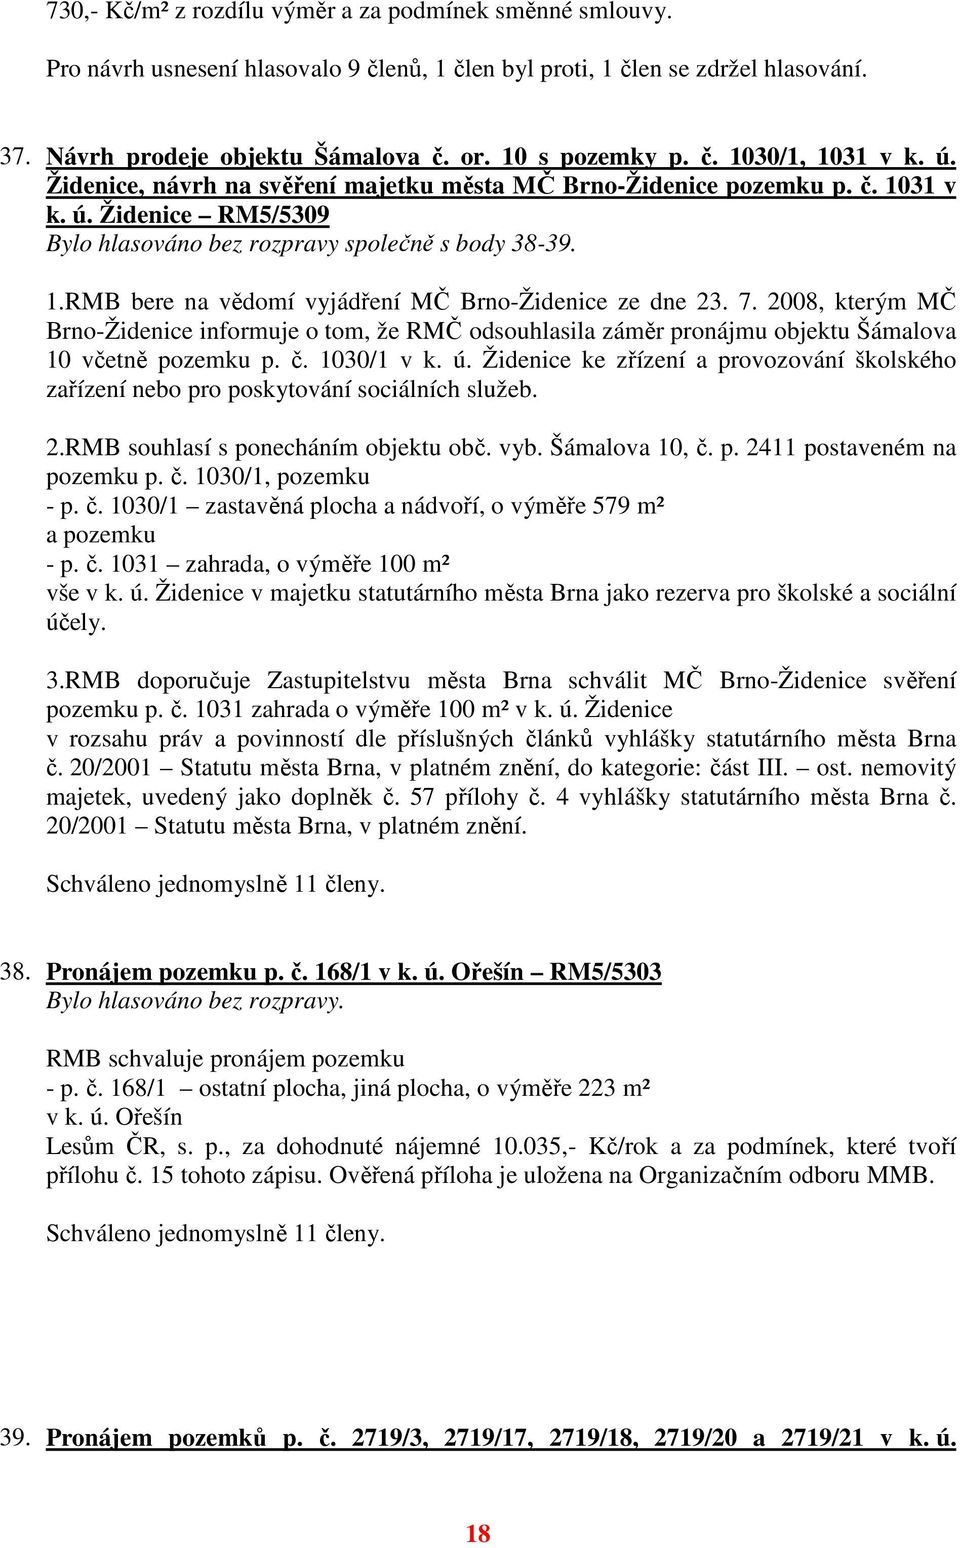 7. 2008, kterým MČ Brno-Židenice informuje o tom, že RMČ odsouhlasila záměr pronájmu objektu Šámalova 10 včetně pozemku p. č. 1030/1 v k. ú.